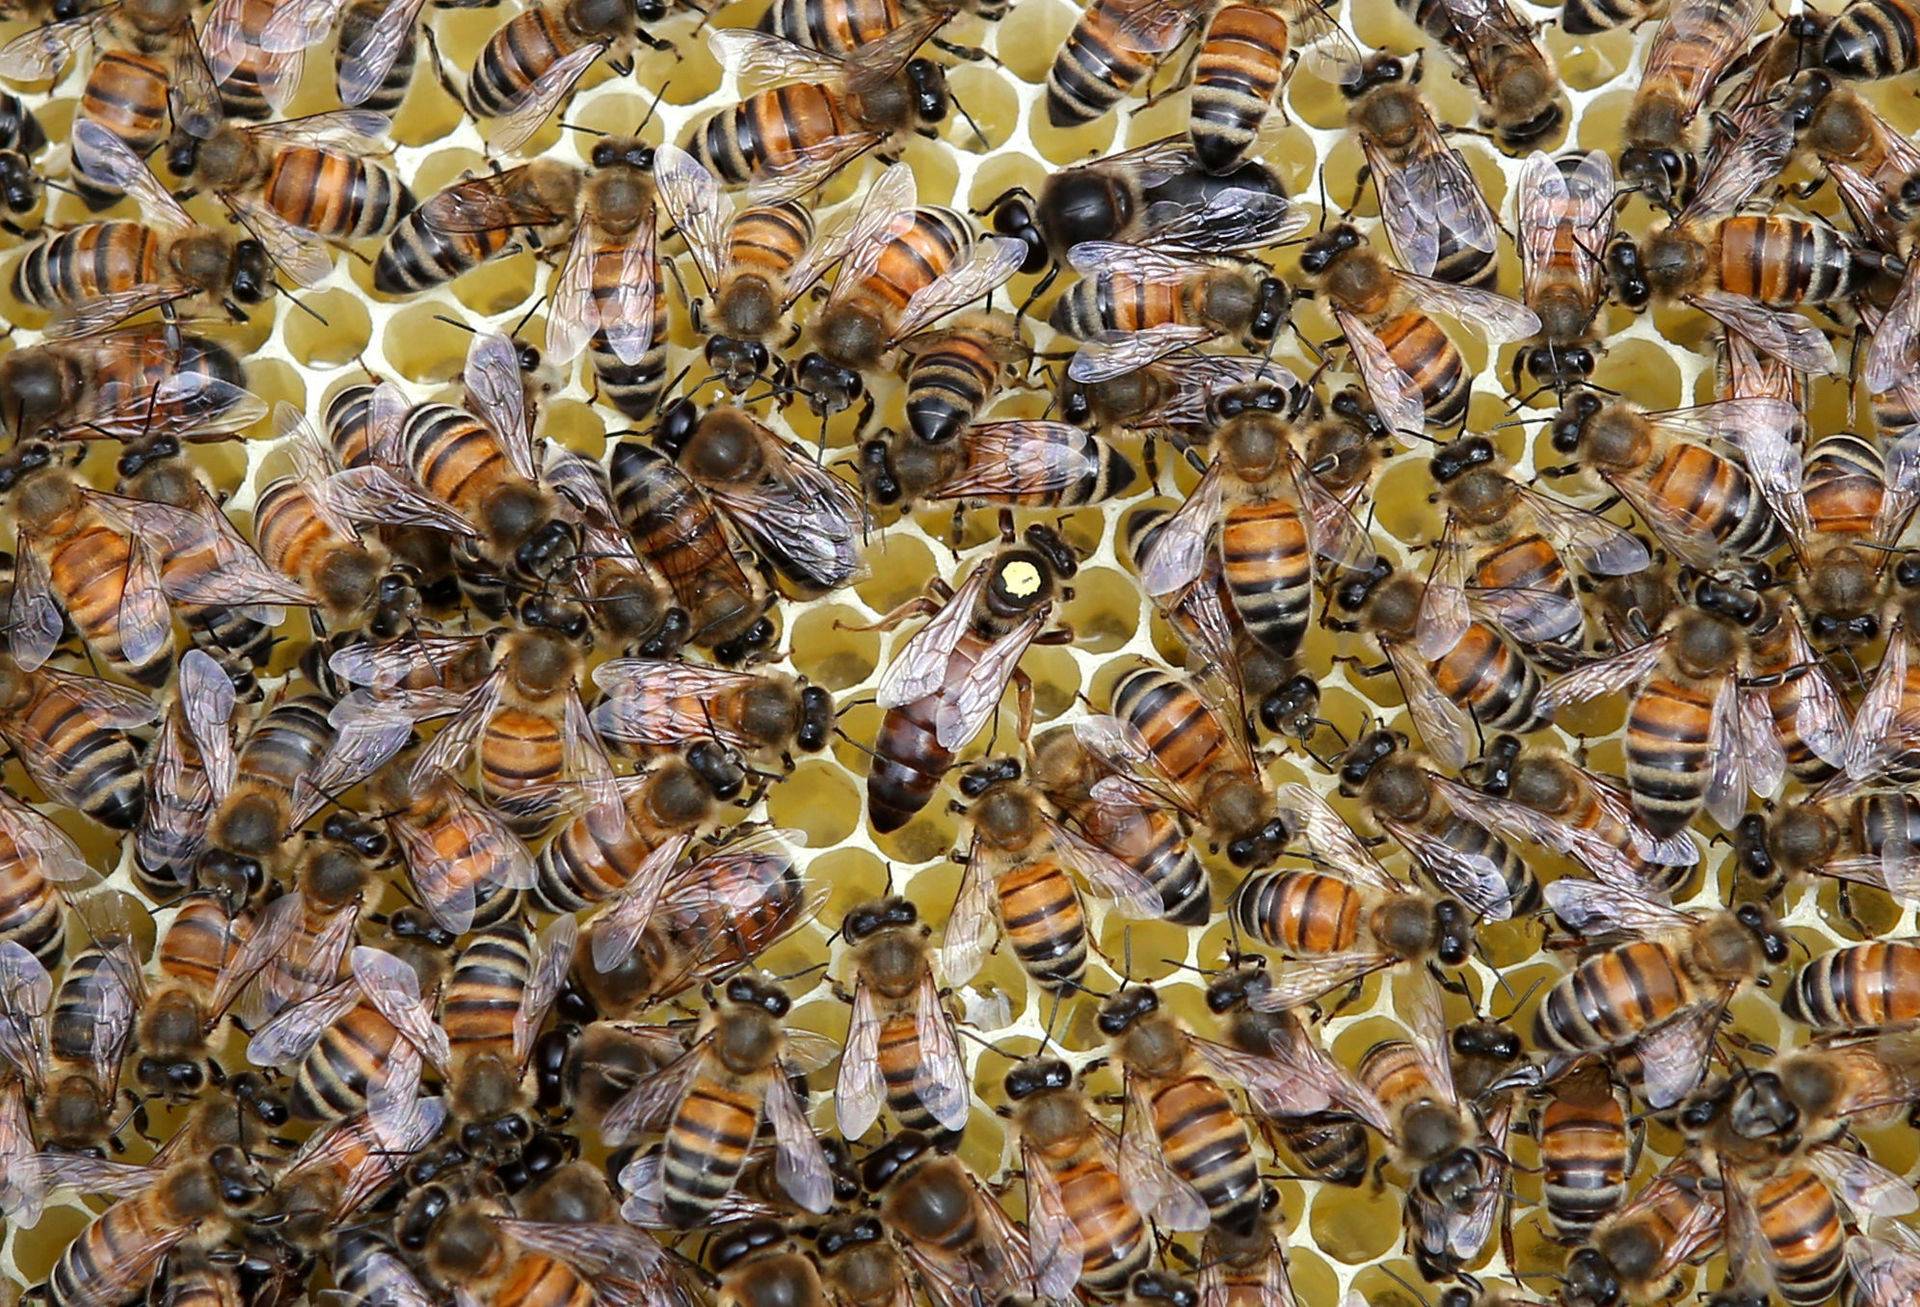 Пчелы карпатской породы (карпатки): характеристики и особенности